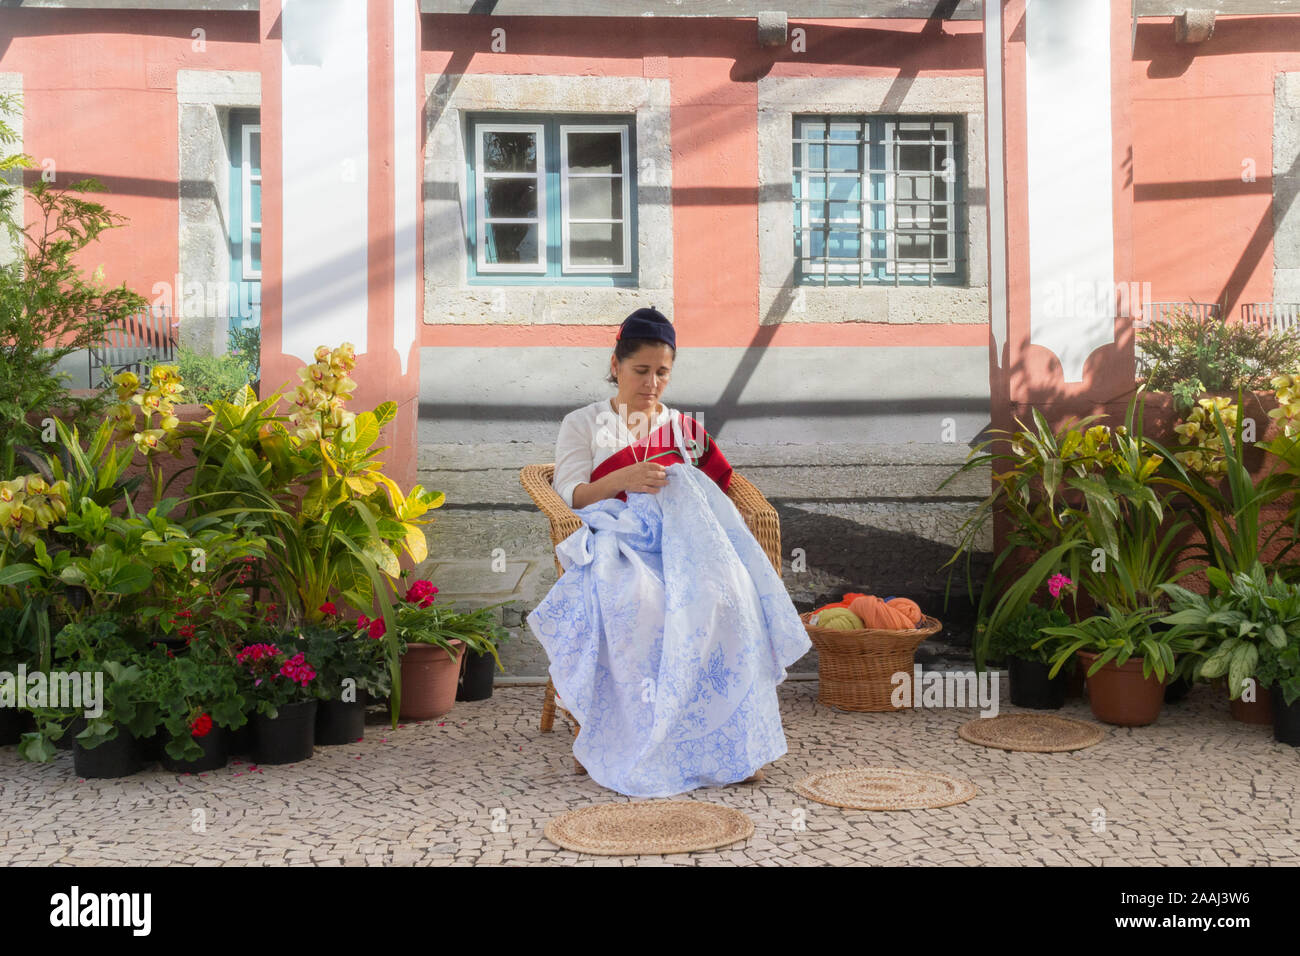 FUNCHAL, PORTUGAL - Avril 2018 : une femme en costume traditionnel brode une nappe durnig l Madère fête des fleurs dans la ville de Funchal. Isl Madère Banque D'Images